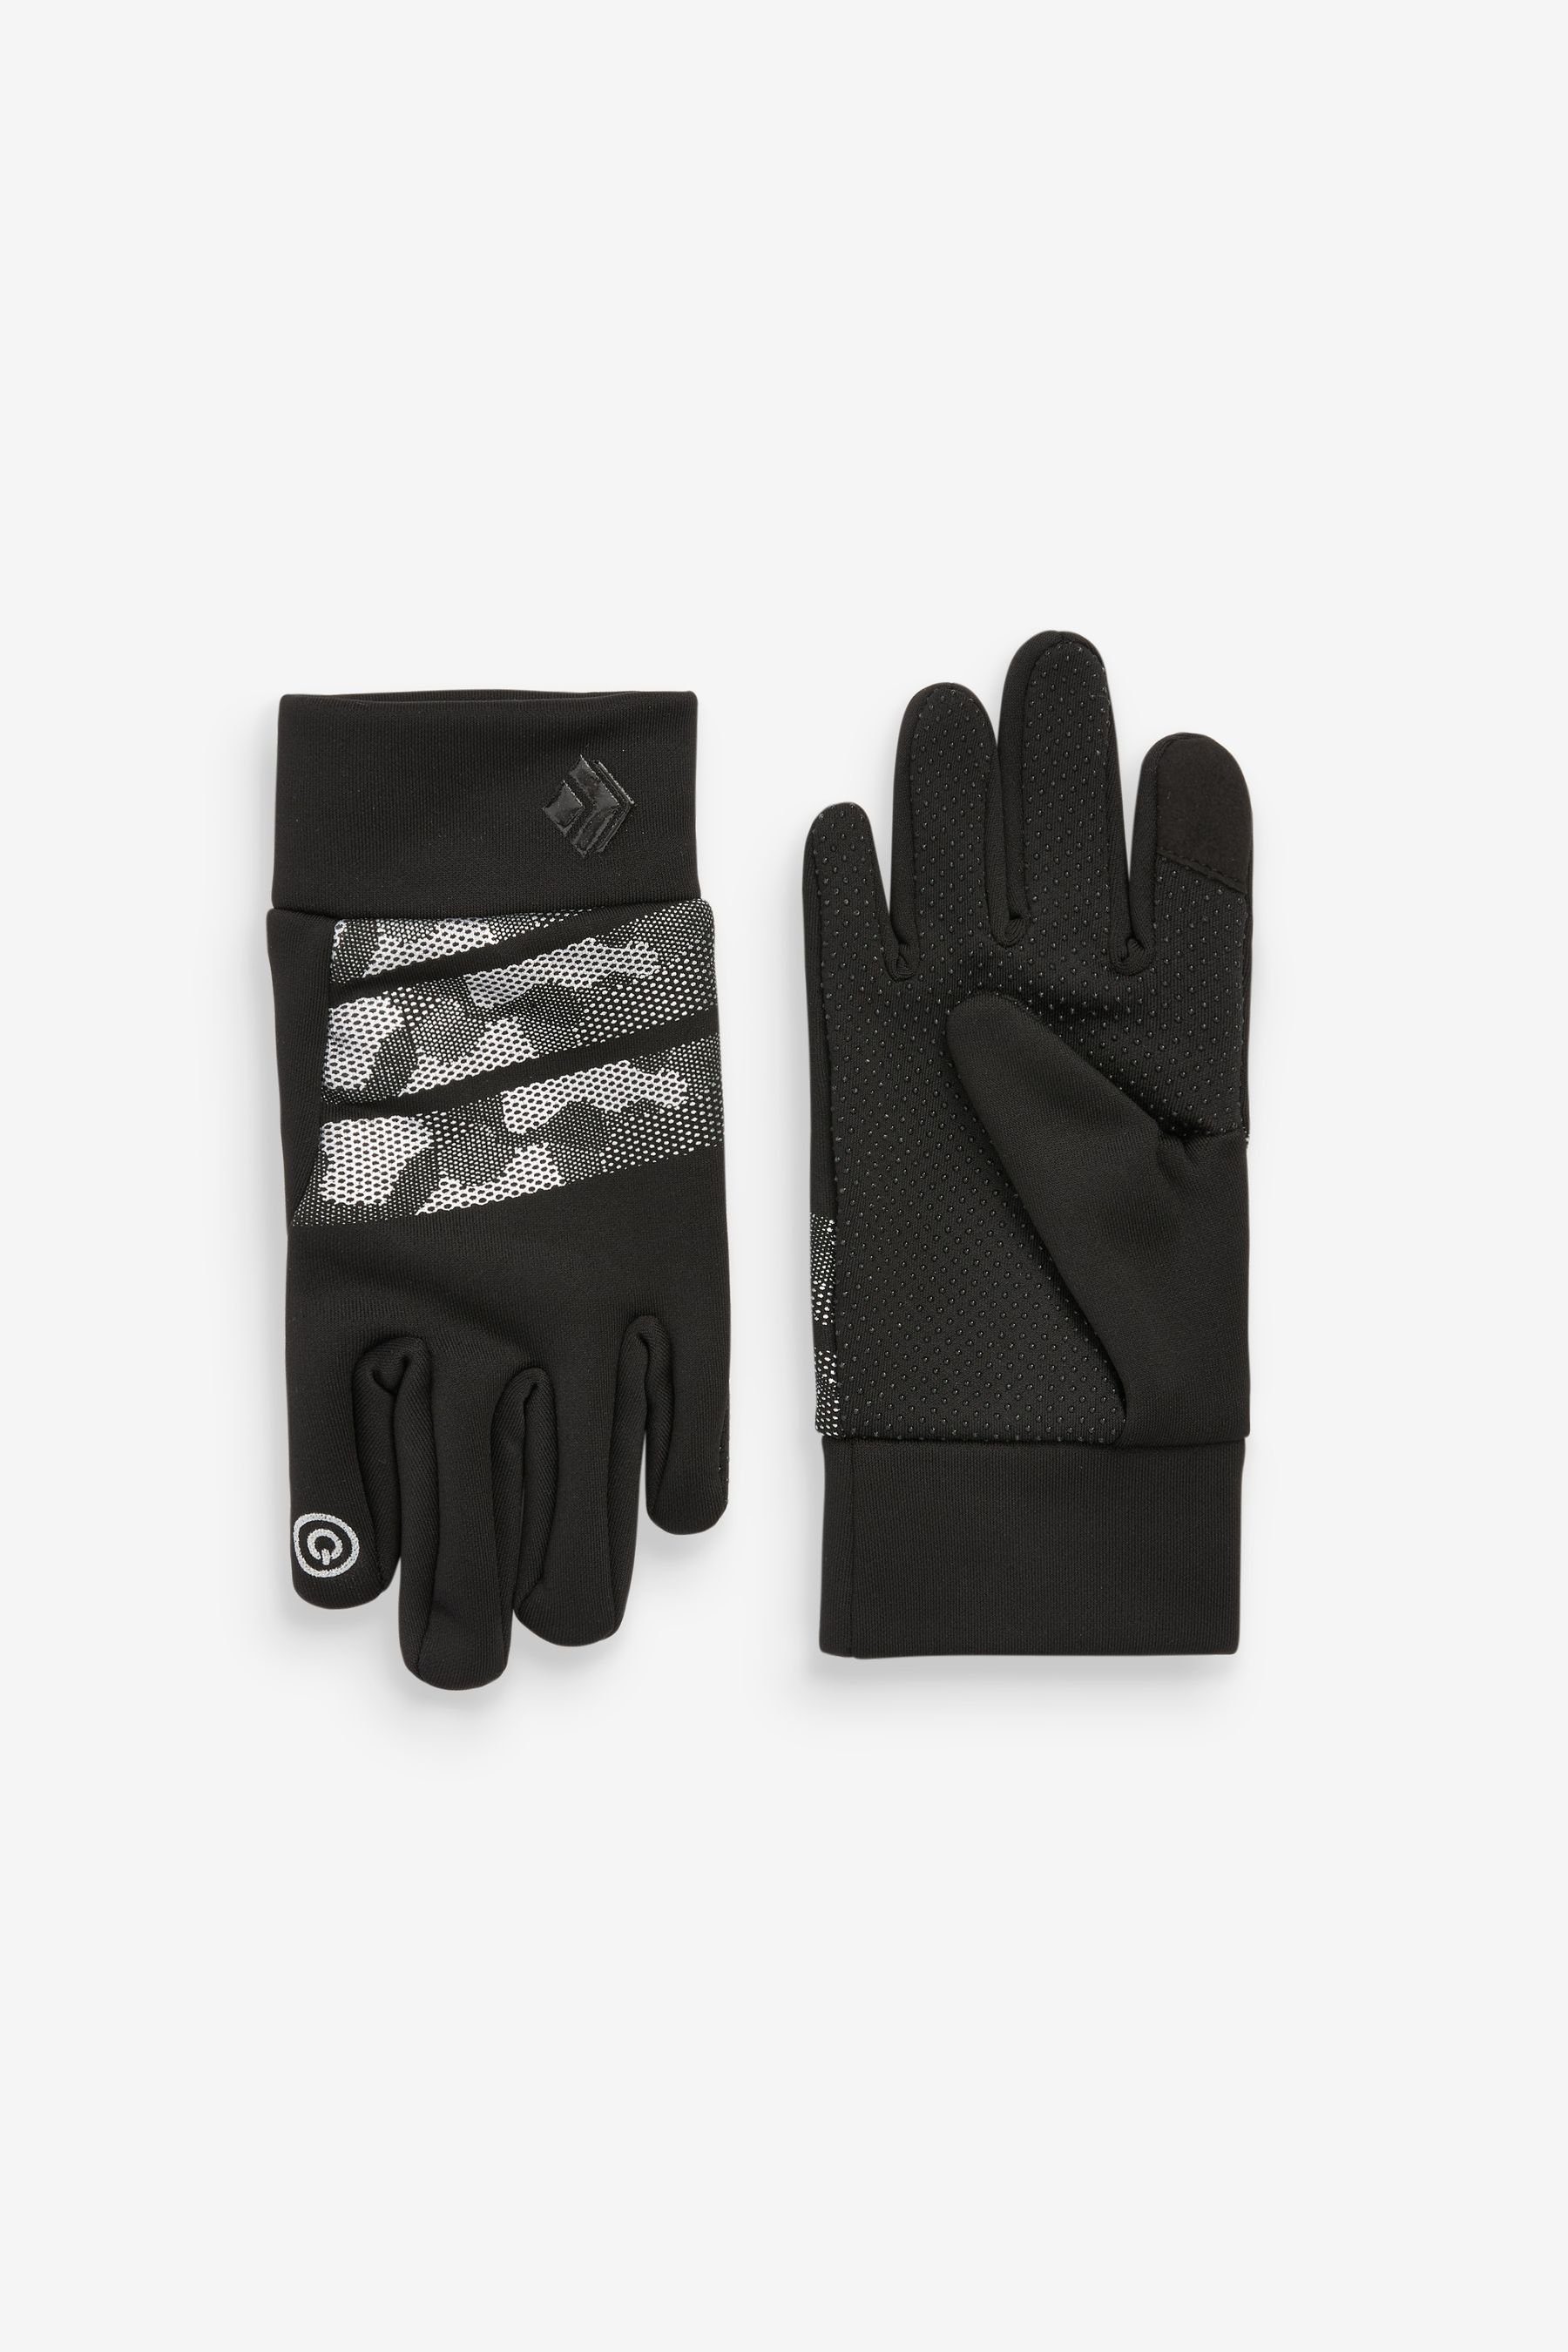 Next Strickhandschuhe Sportliche Handschuhe Black/Grey Camouflage